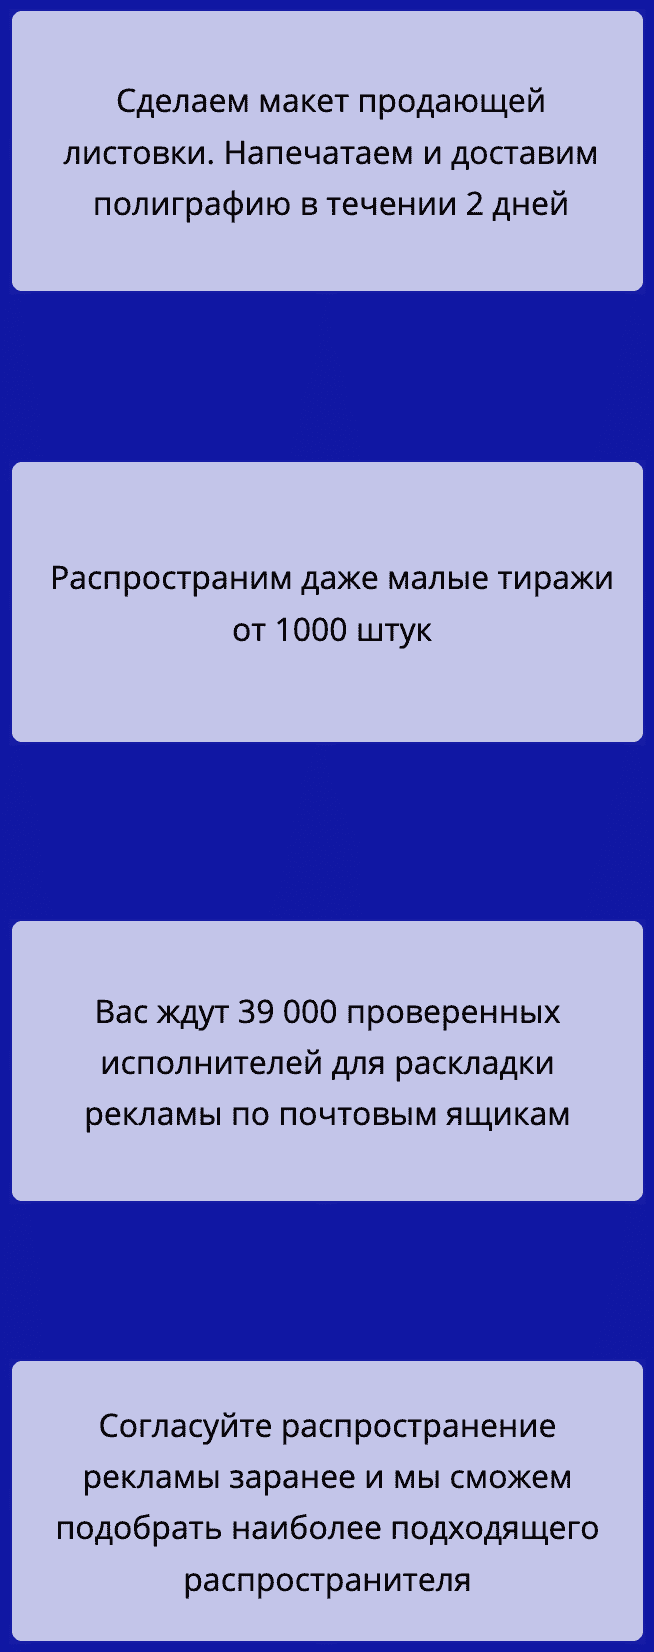 Распространение листовок по почтовым ящикам в Москве описание услуг